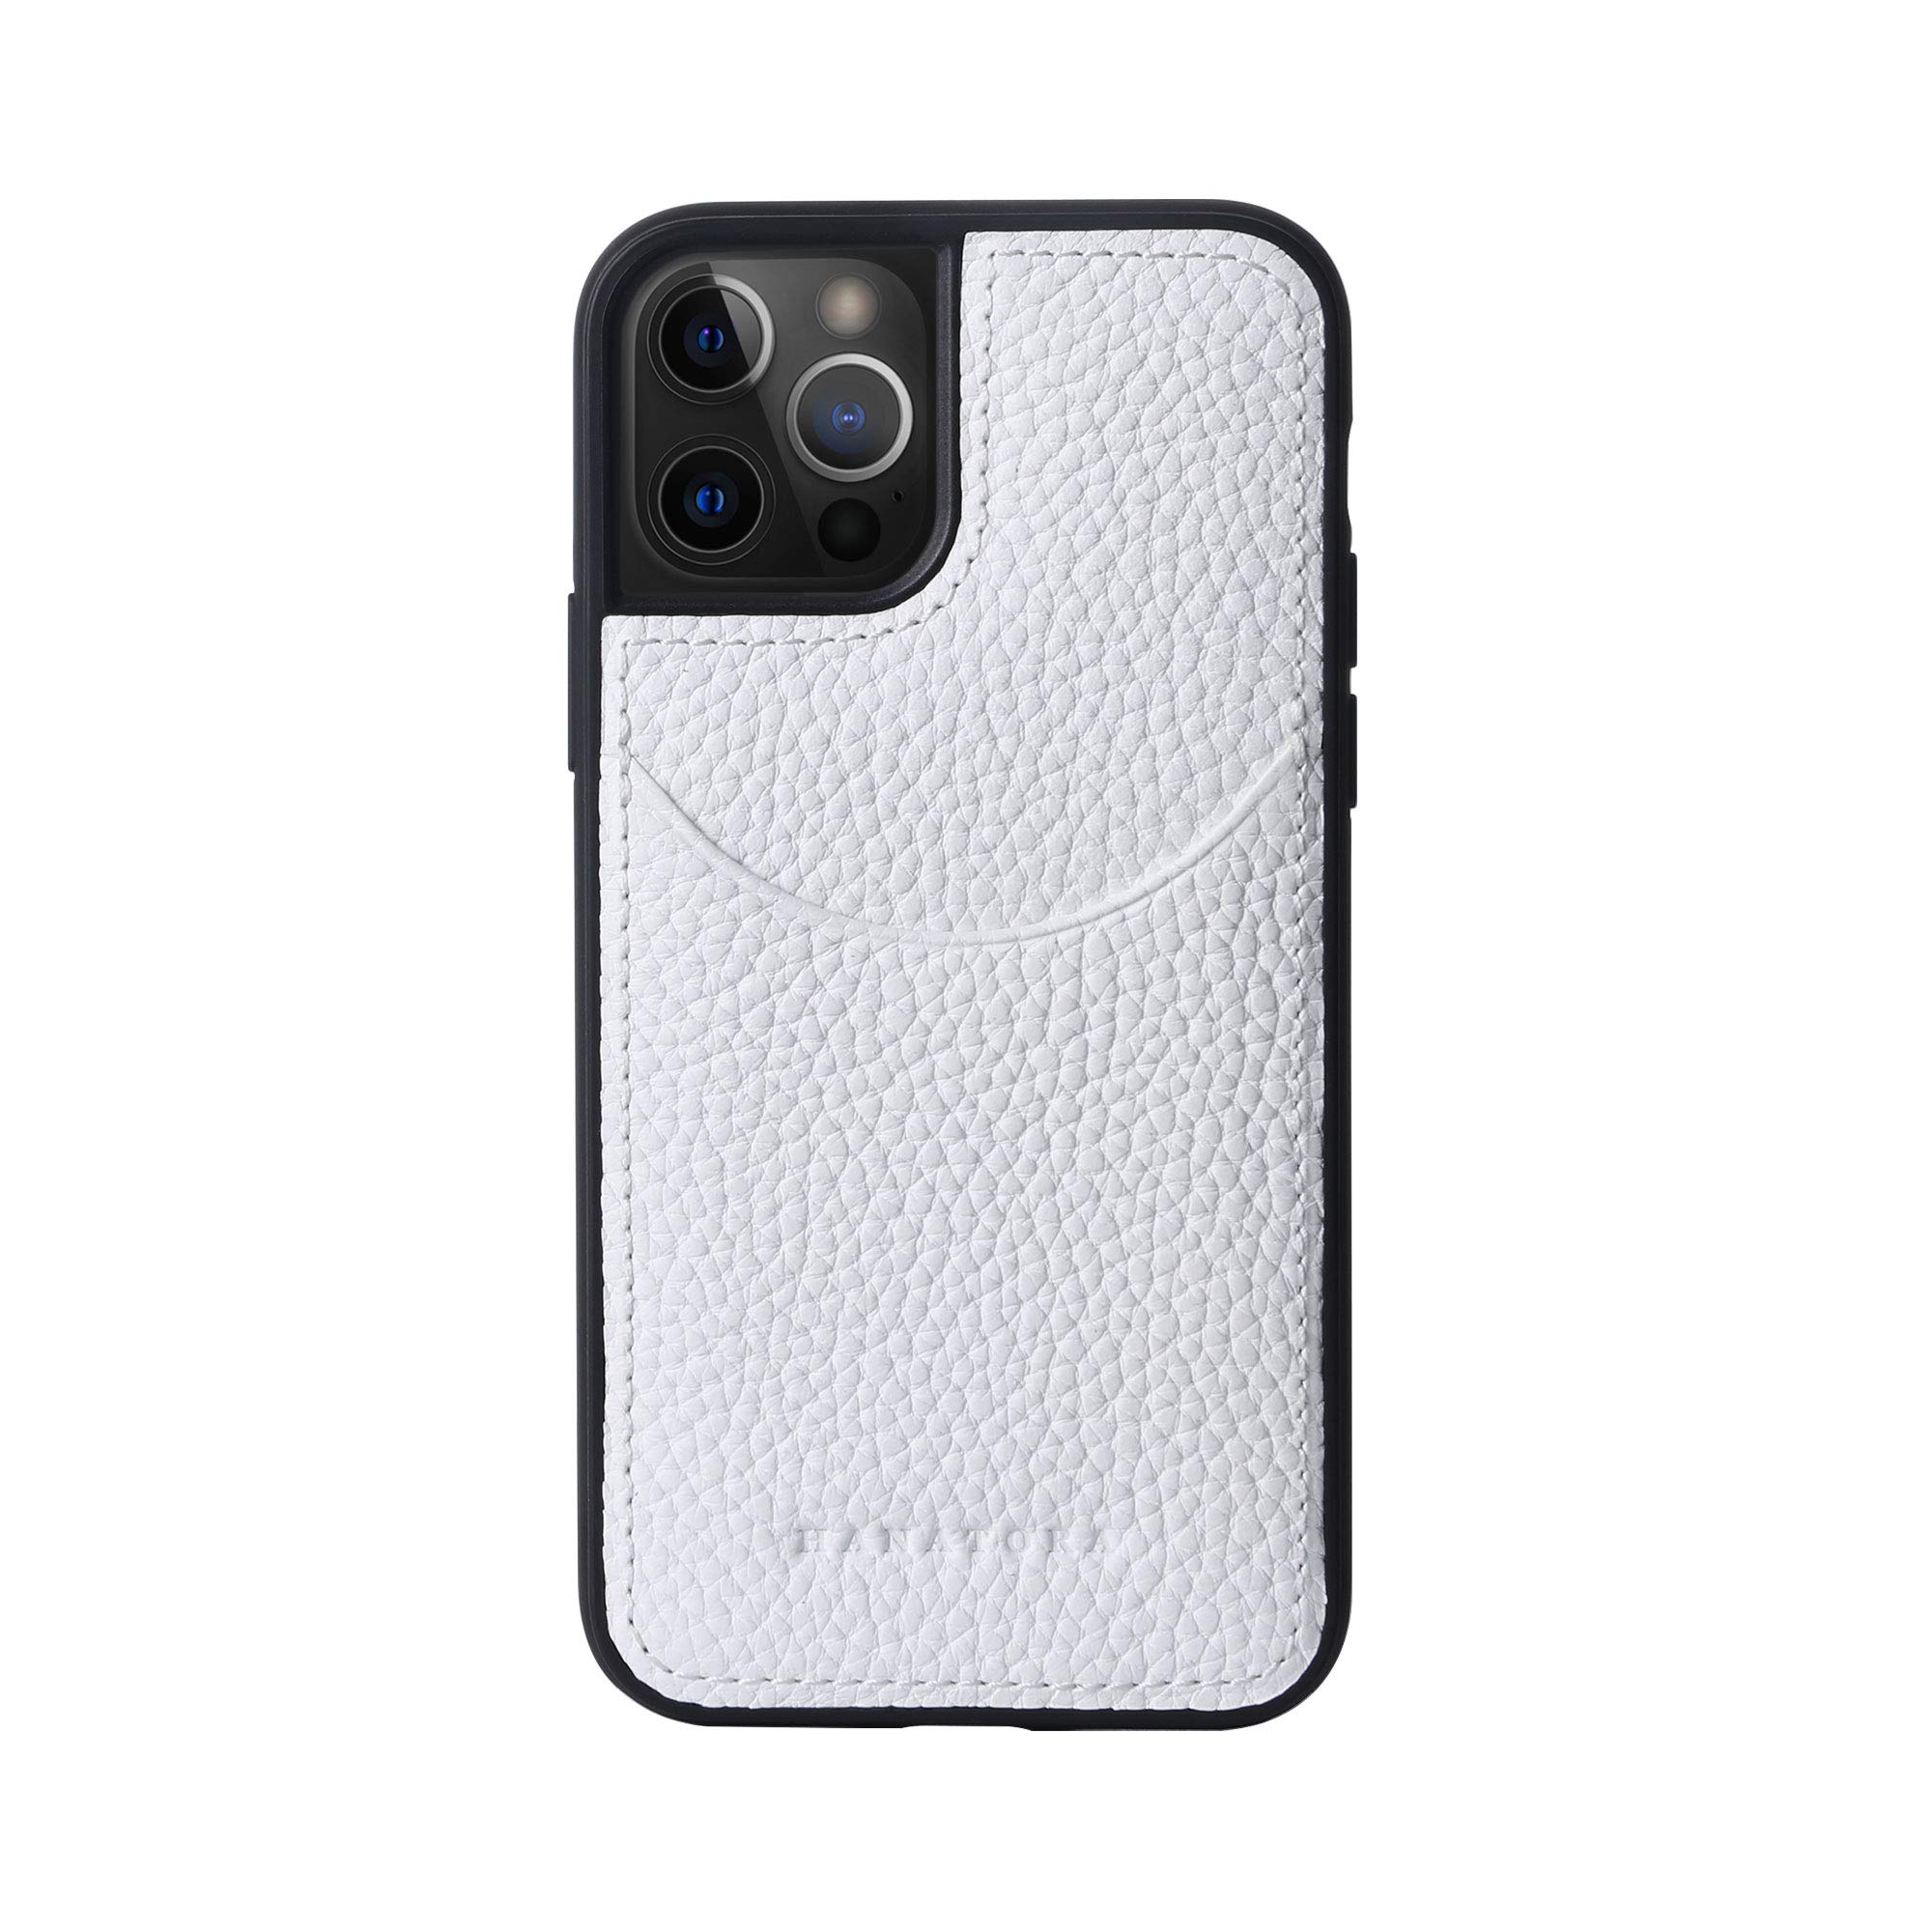 [HANATORA] iPhone12 Pro/ iPhone12 ケース 本革 シュリンクカーフレザー カードポケット 耐衝撃 ハンドメイド ギフト おしゃれ シンプル 大人可愛い メンズ レディース スマホケース 白 シロ ホワイト CPG-12Pro-White